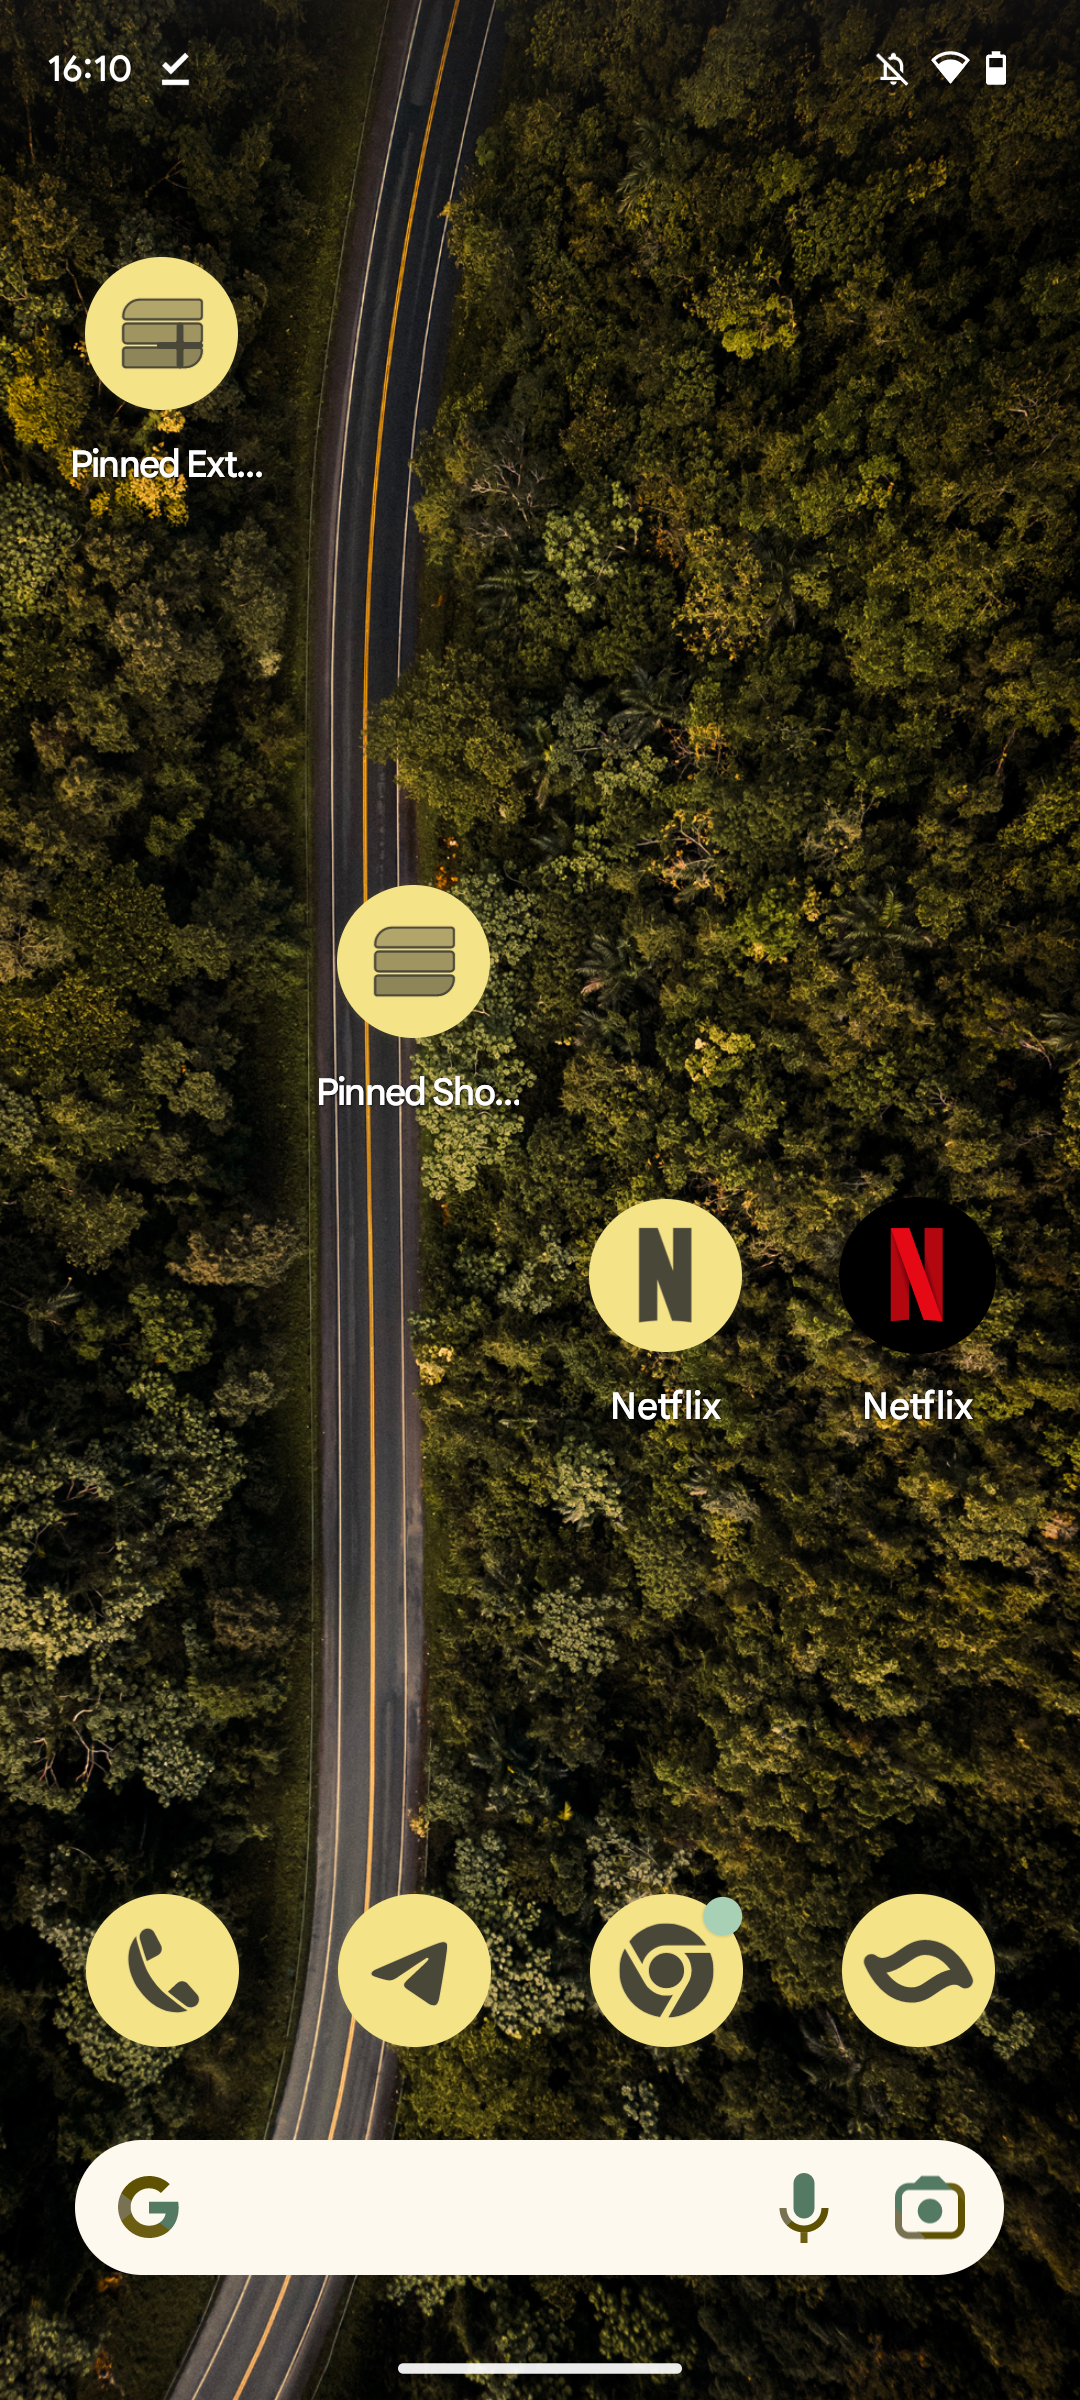 Captura de tela da tela inicial do Pixel Launcher, com o novo ícone temático do Netflix e o ícone normal do Netflix um ao lado do outro